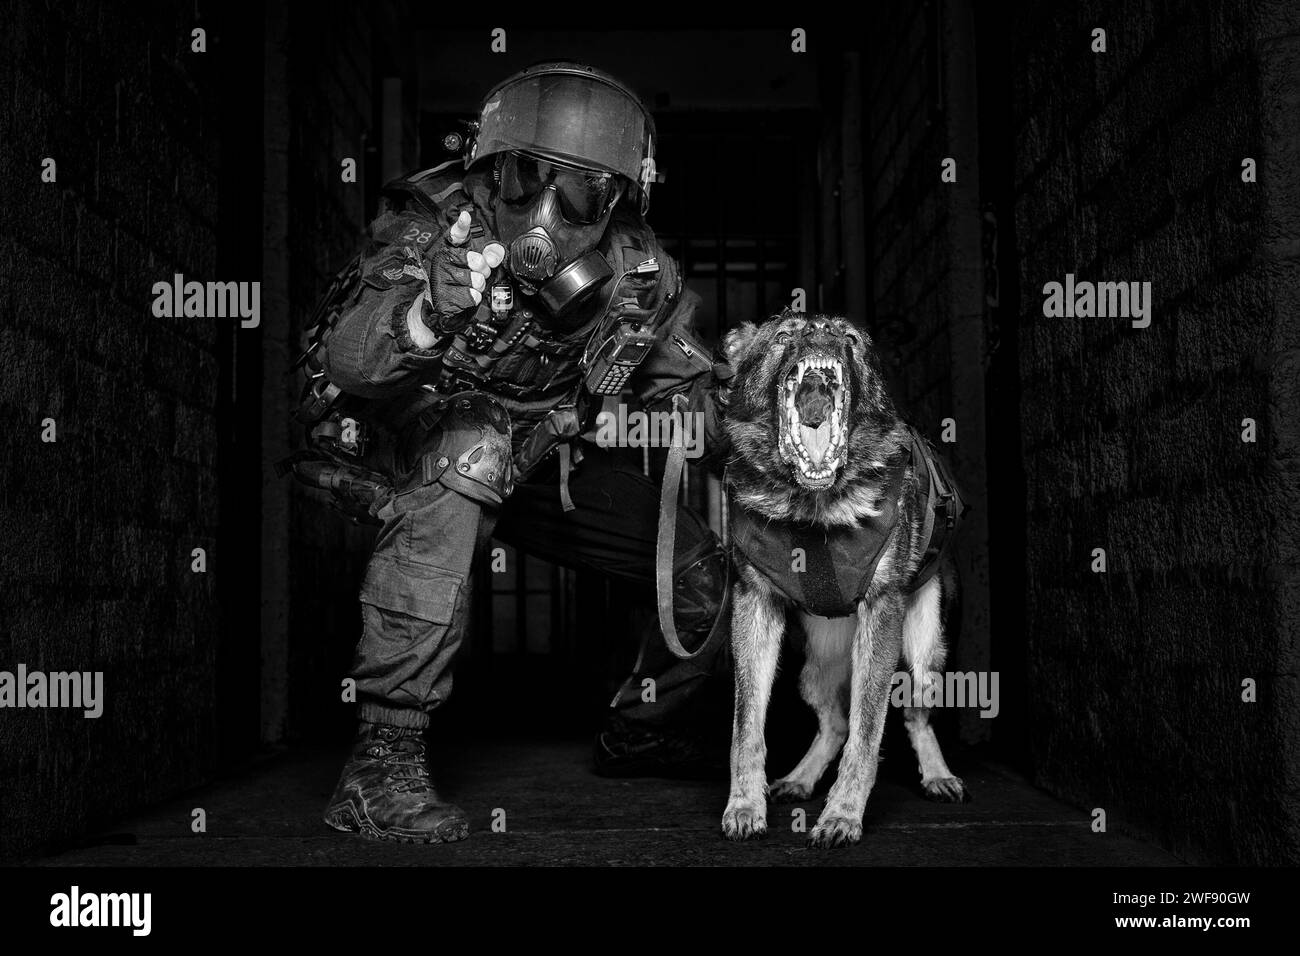 Der britische Gefängnisdienst Tornado-Team Hund und Hundeführer in Aufruhrausrüstung, der deutsche Schäferhund knackt und bellt aggressiv, beide konzentrieren sich auf die Kamera Stockfoto